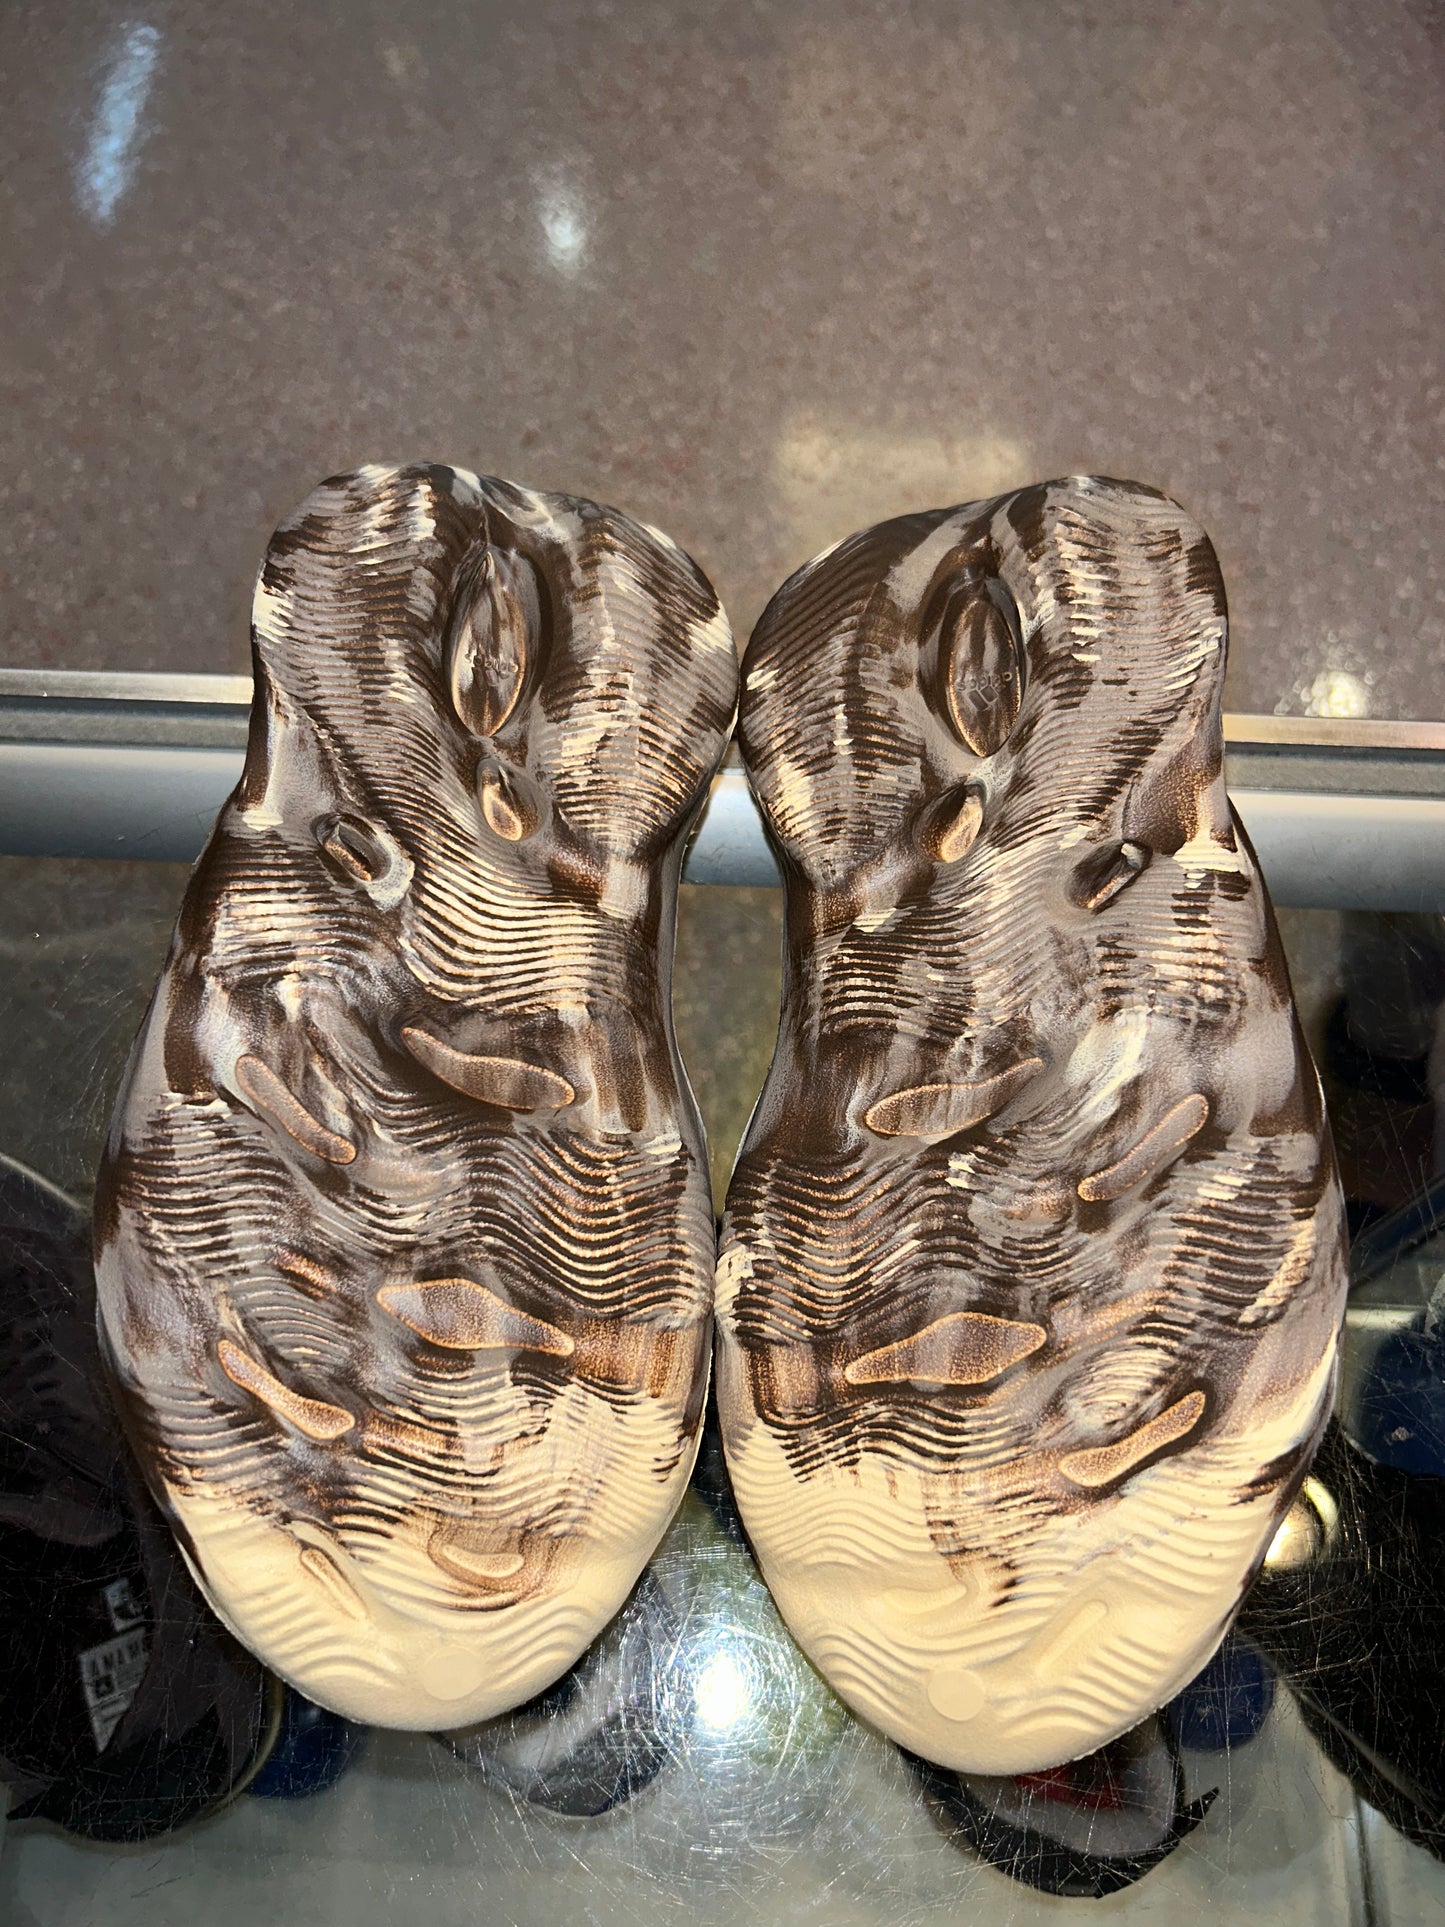 Size 8 Adidas Yeezy Foam Rnnr “MX Cream Clay” Brand New (Mall)